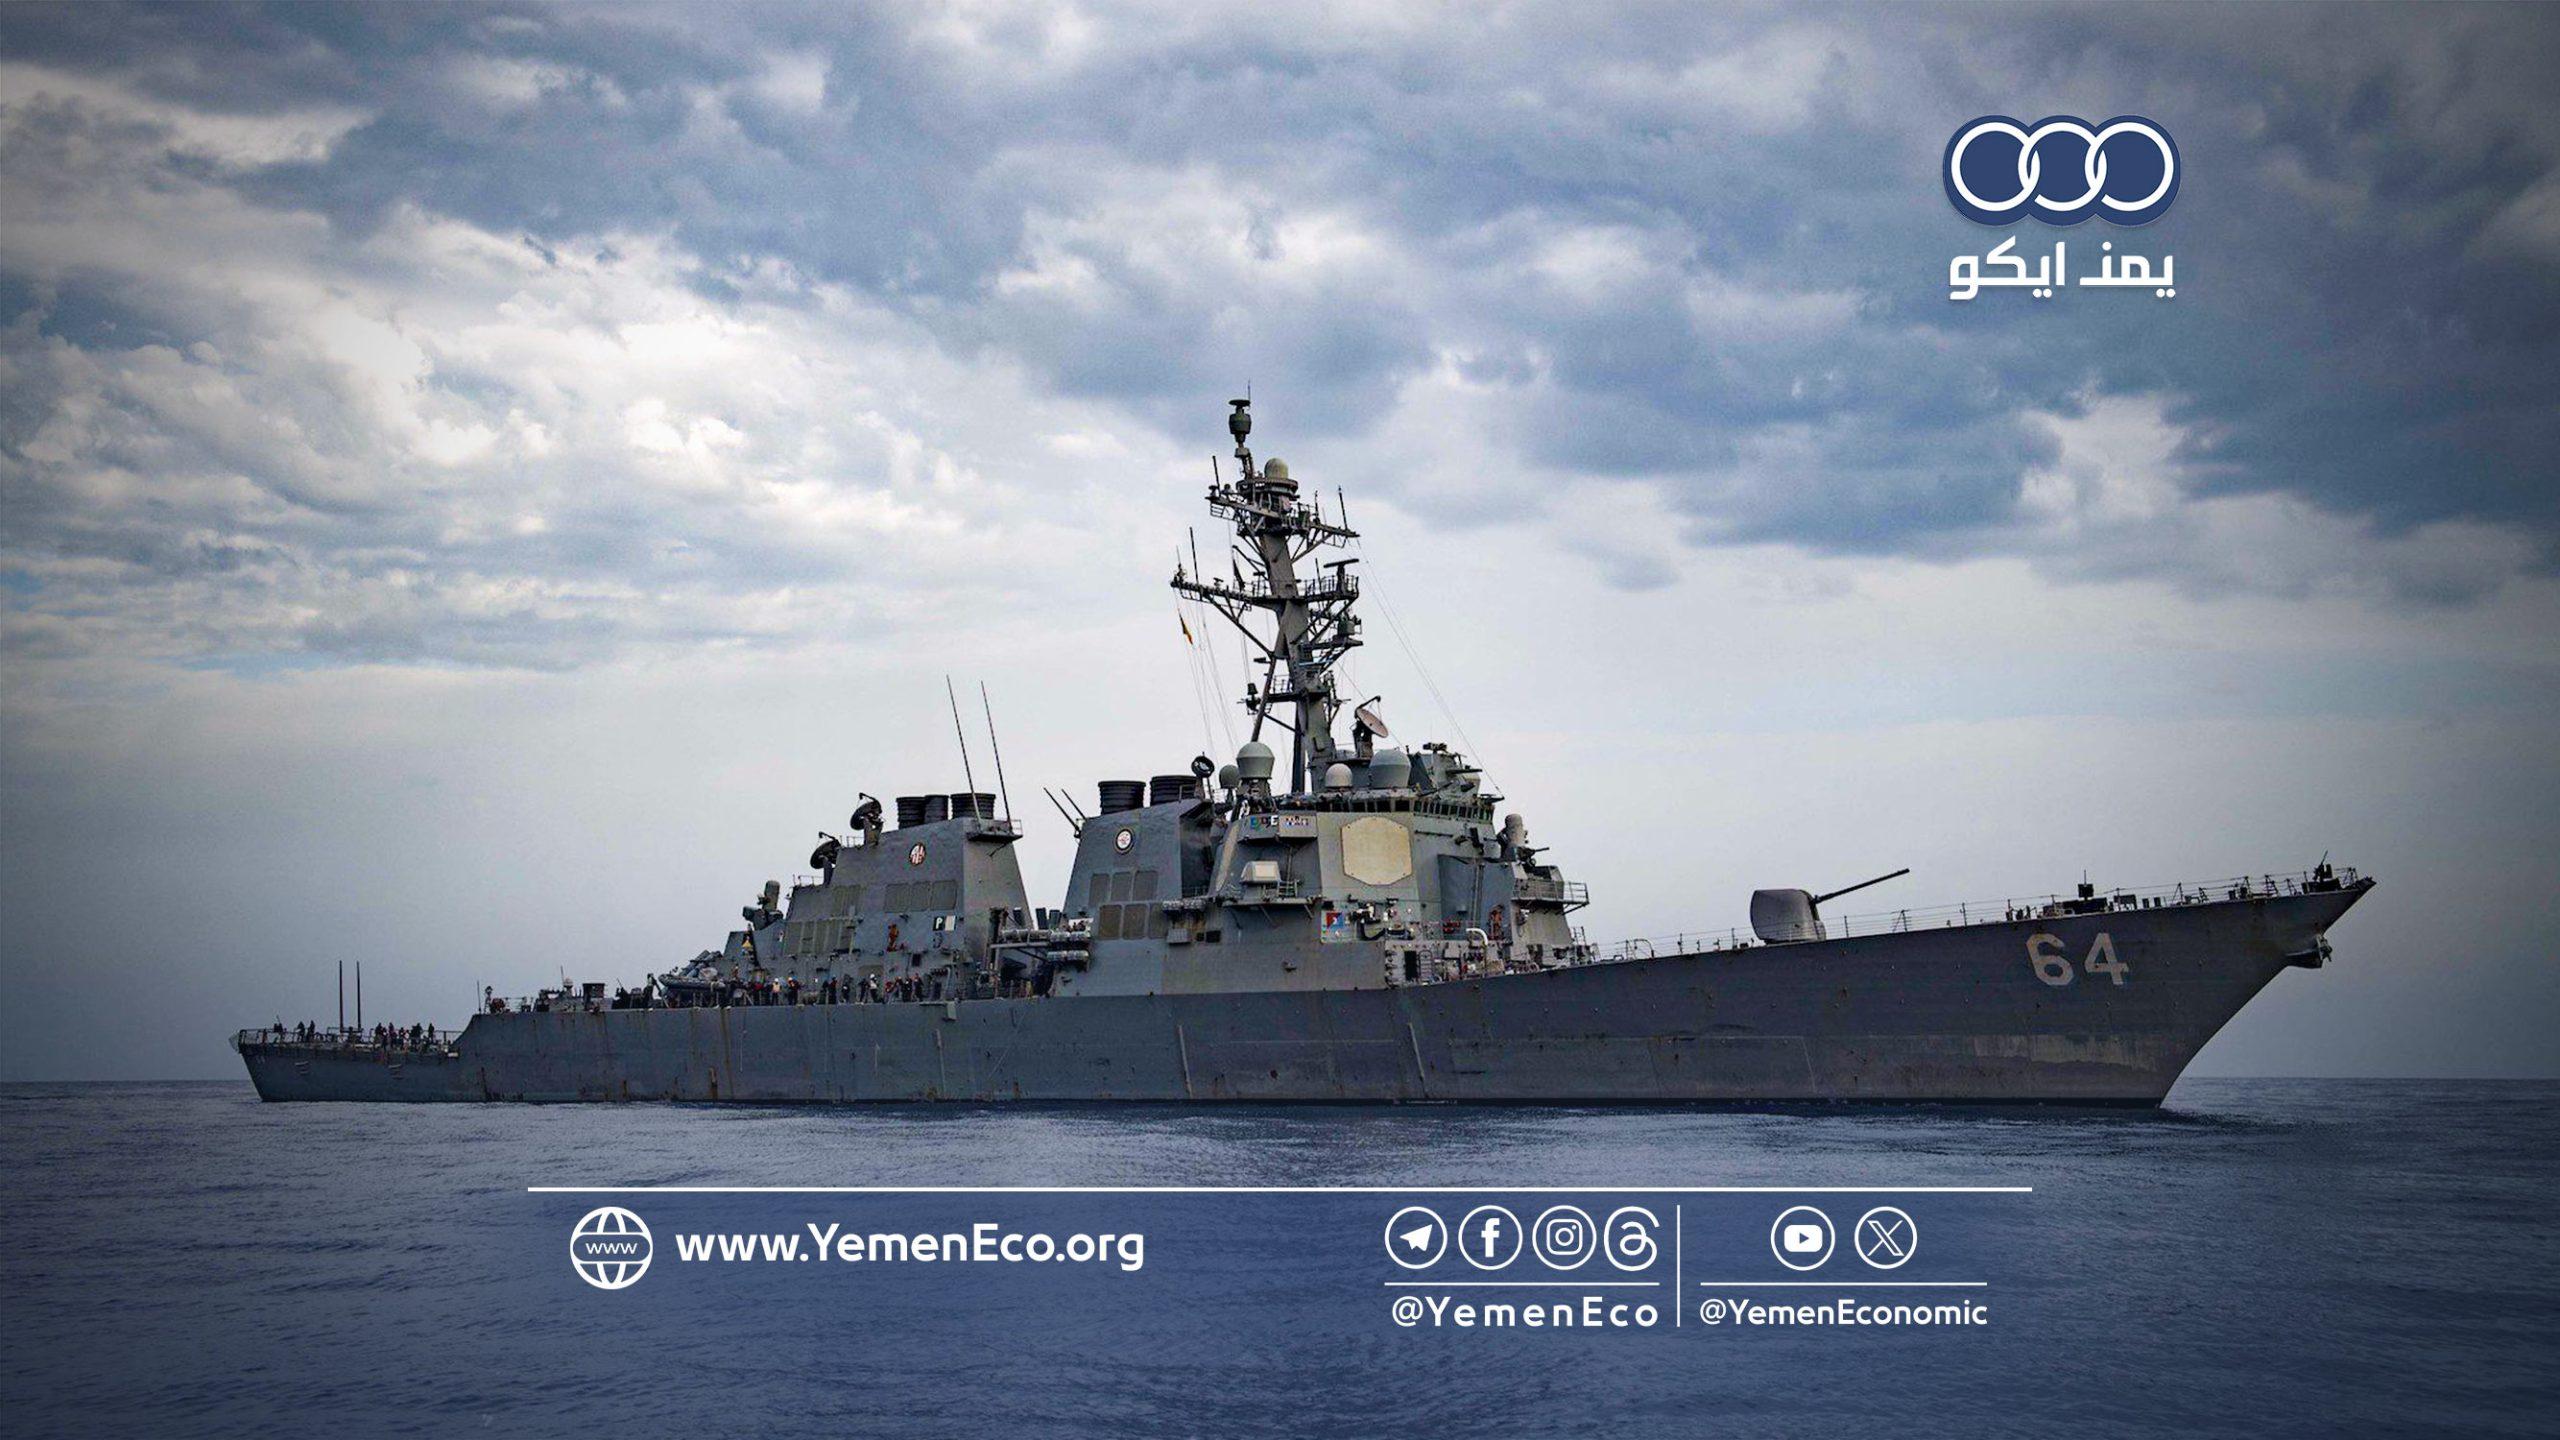 إسرائيل تعترف بإصابة سفينة مملوكة لها في البحر الأحمر والبنتاغون يتحدث عن صاروخ باليستي يمني